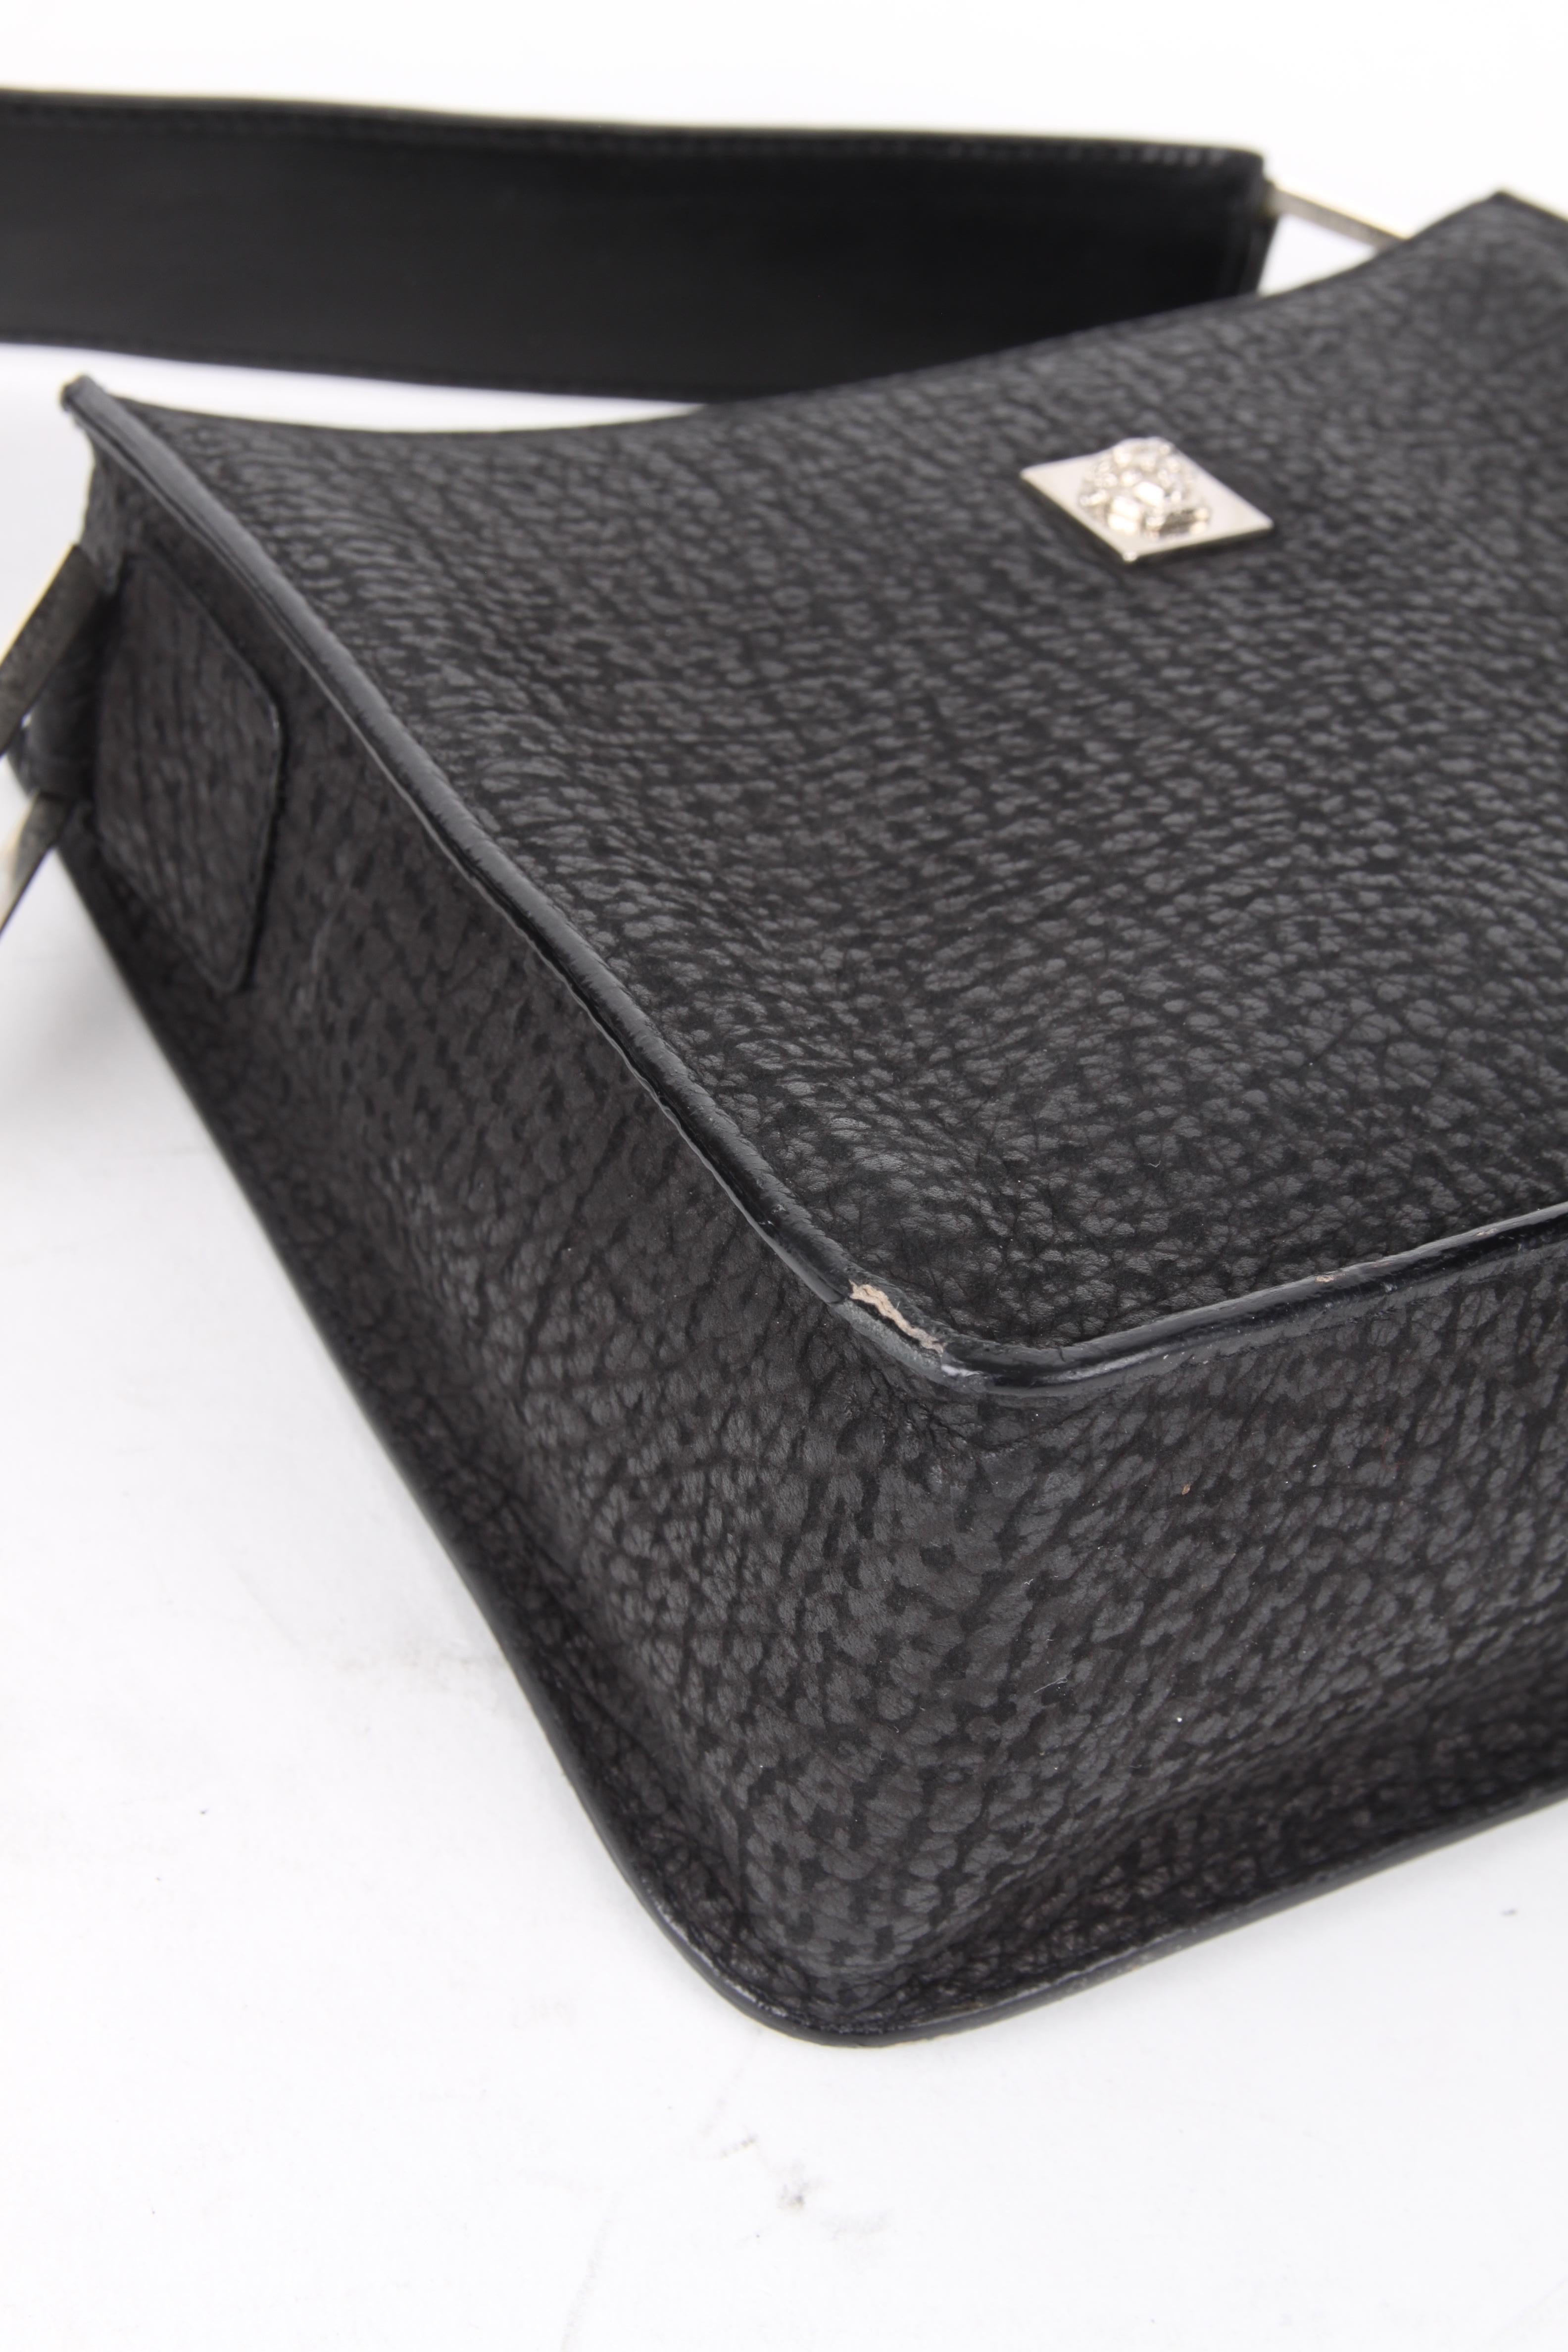 Gianni Versace Black Silver Leather Shoulder Bag For Sale 2